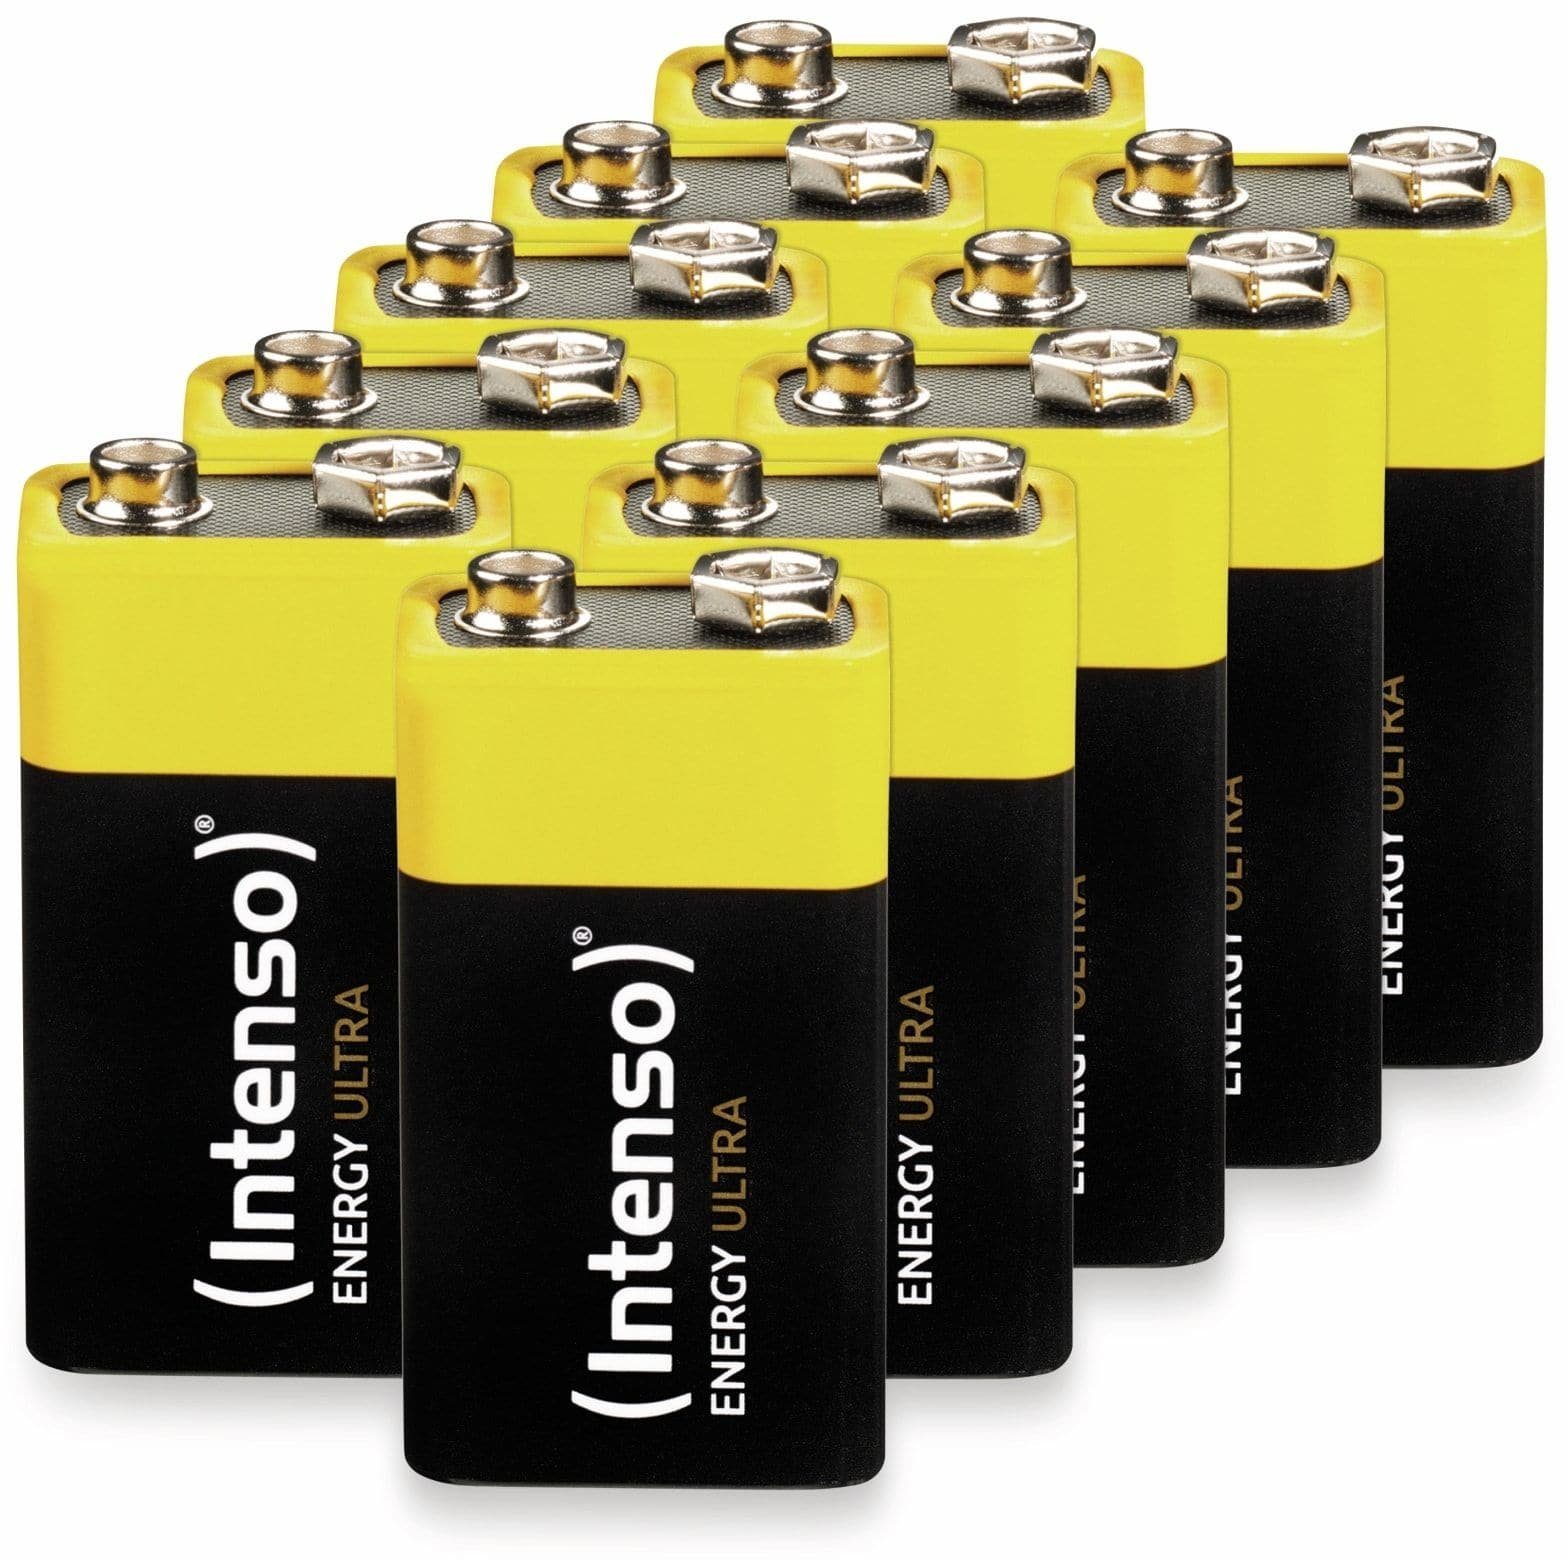 INTENSO 9V-Blockbatterie Batterie Ultra, 6LR61 Intenso Energy